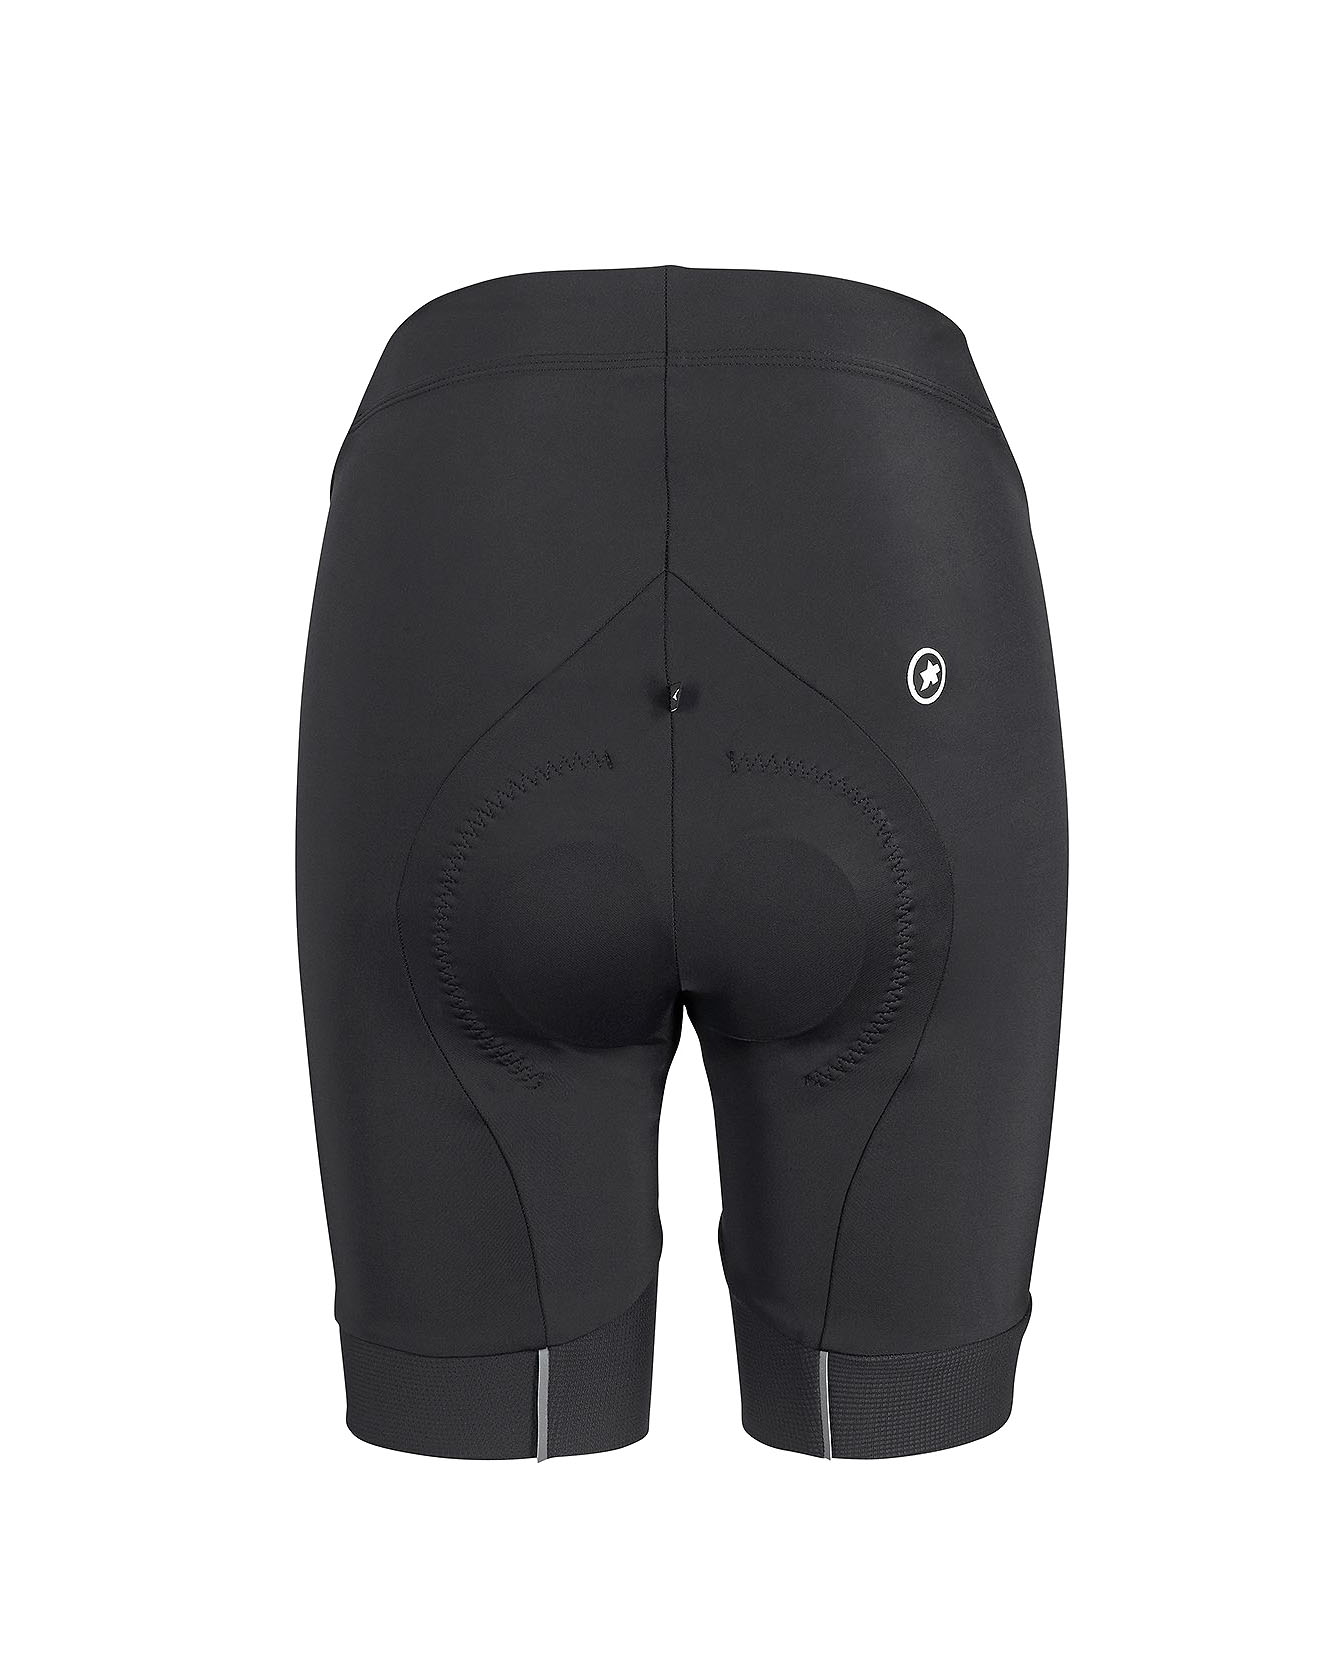 Велотрусы ASSOS Uma GT Half Shorts Evo, женские, черные с белым логотипом, M фото 2